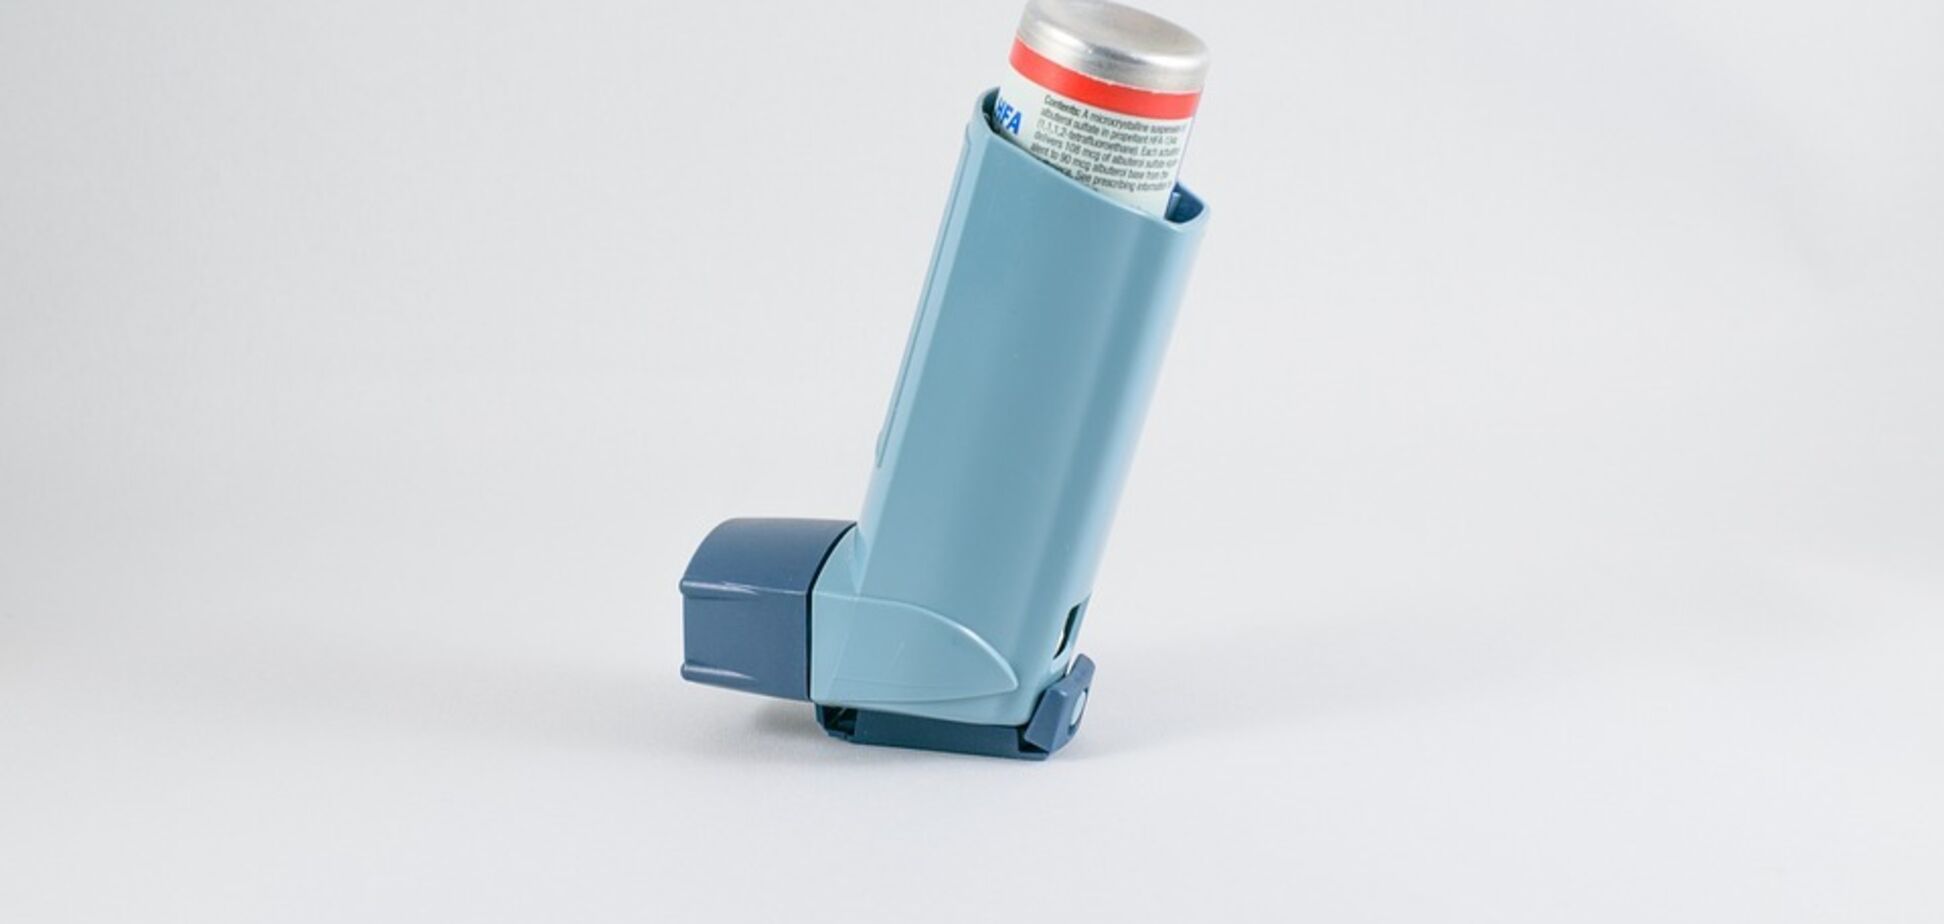 Ингаляторы от астмы оказались опасными